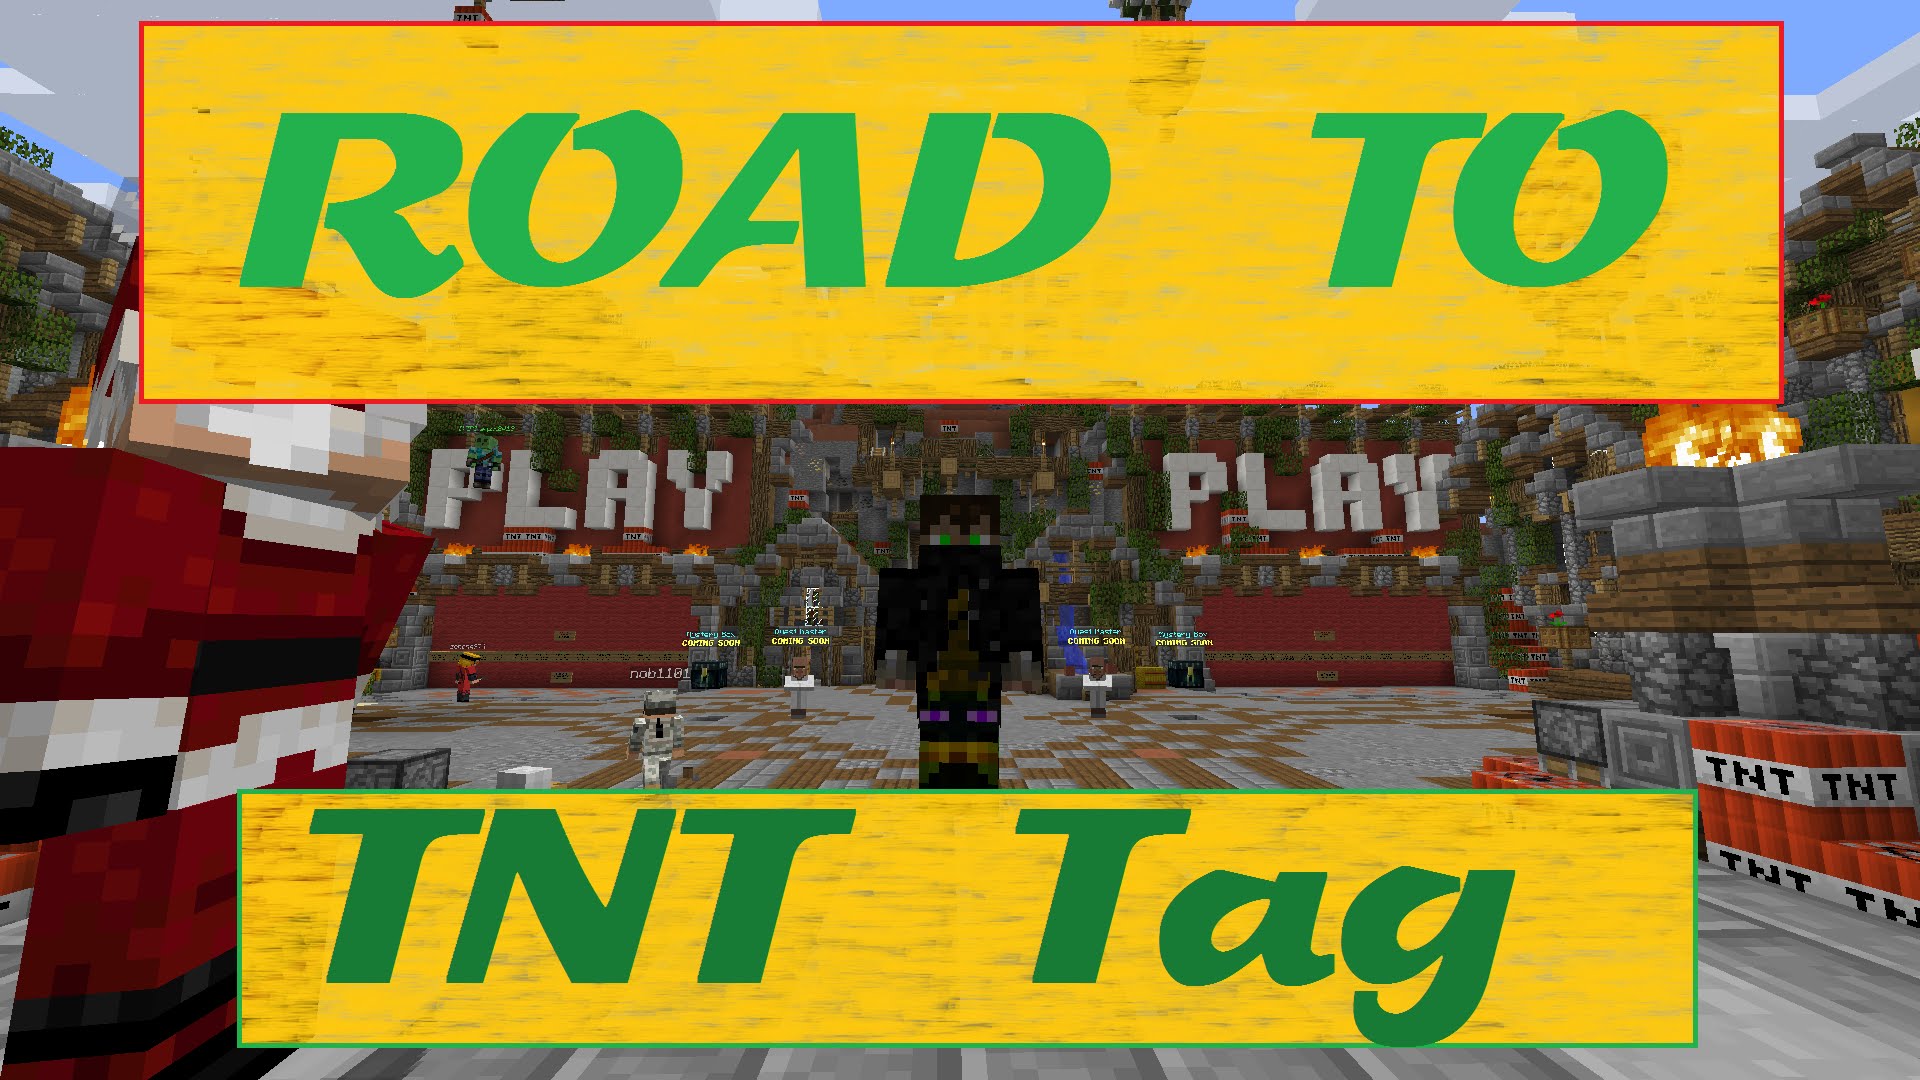 Road to win TNT Tag - Ep. 2 de Kokt3r